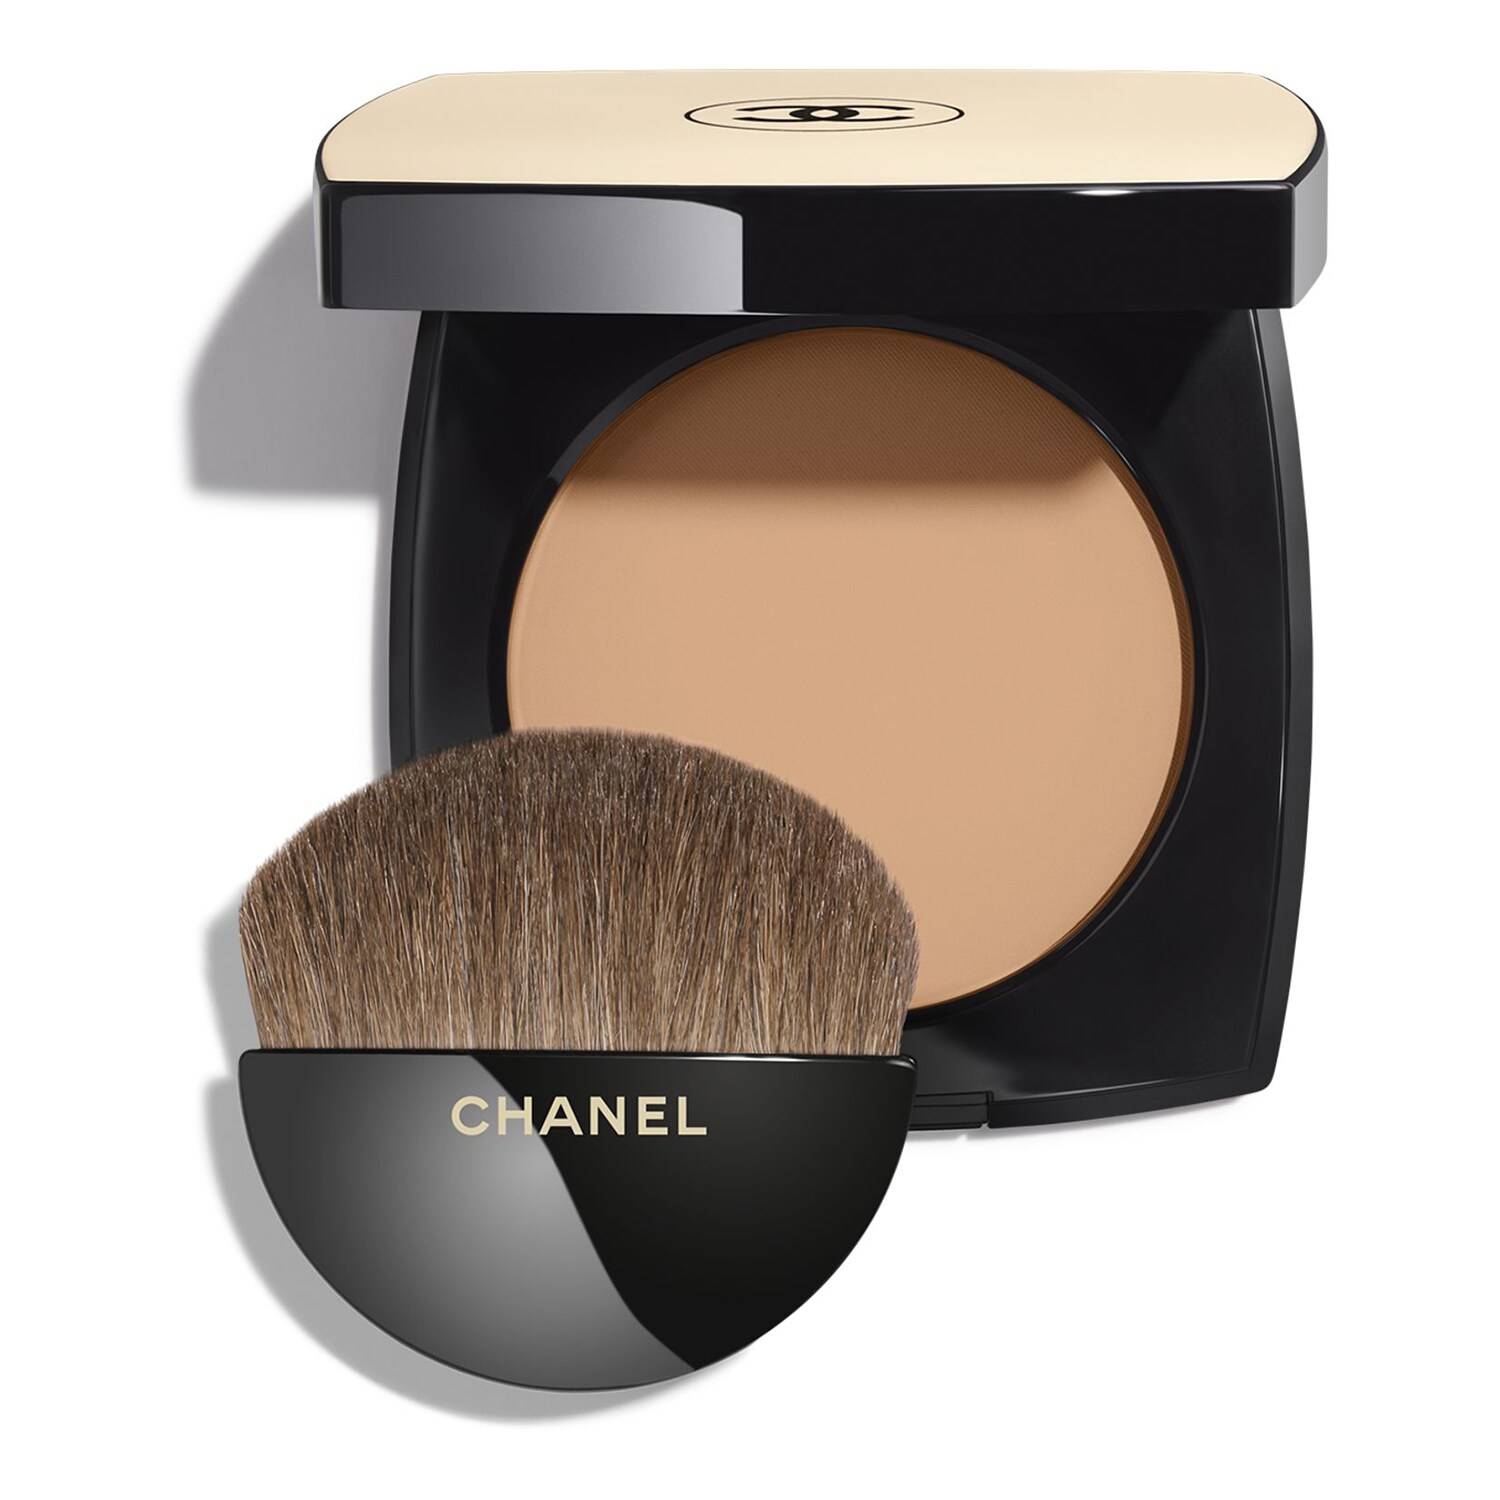 Chanel Les Beiges Healthy Glow Powder 12G B50